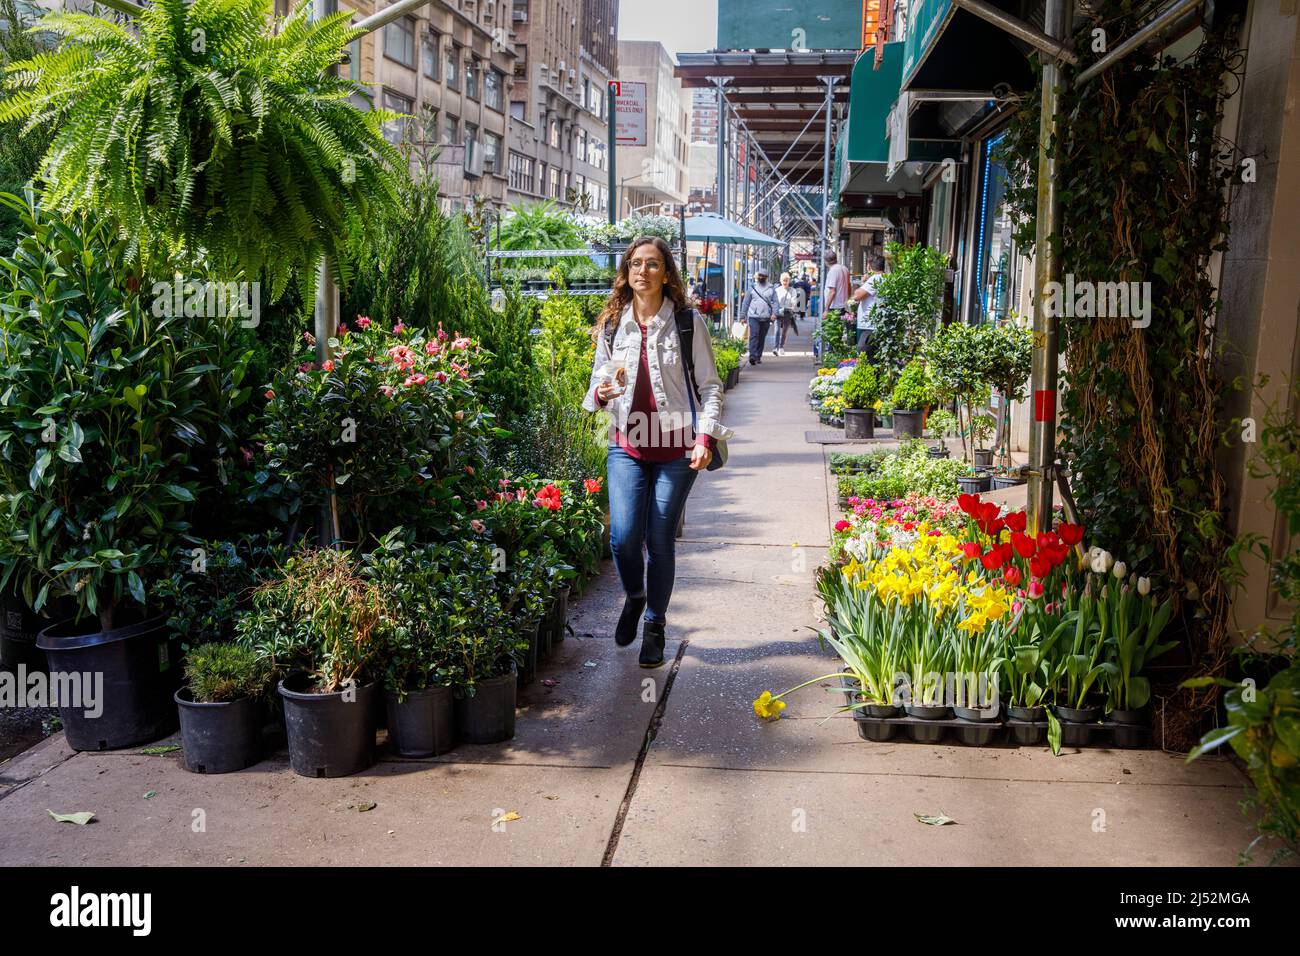 Passeggiata panoramica nel quartiere dei fiori, 28th Street, Manhattan, New York, NY, USA. Foto Stock